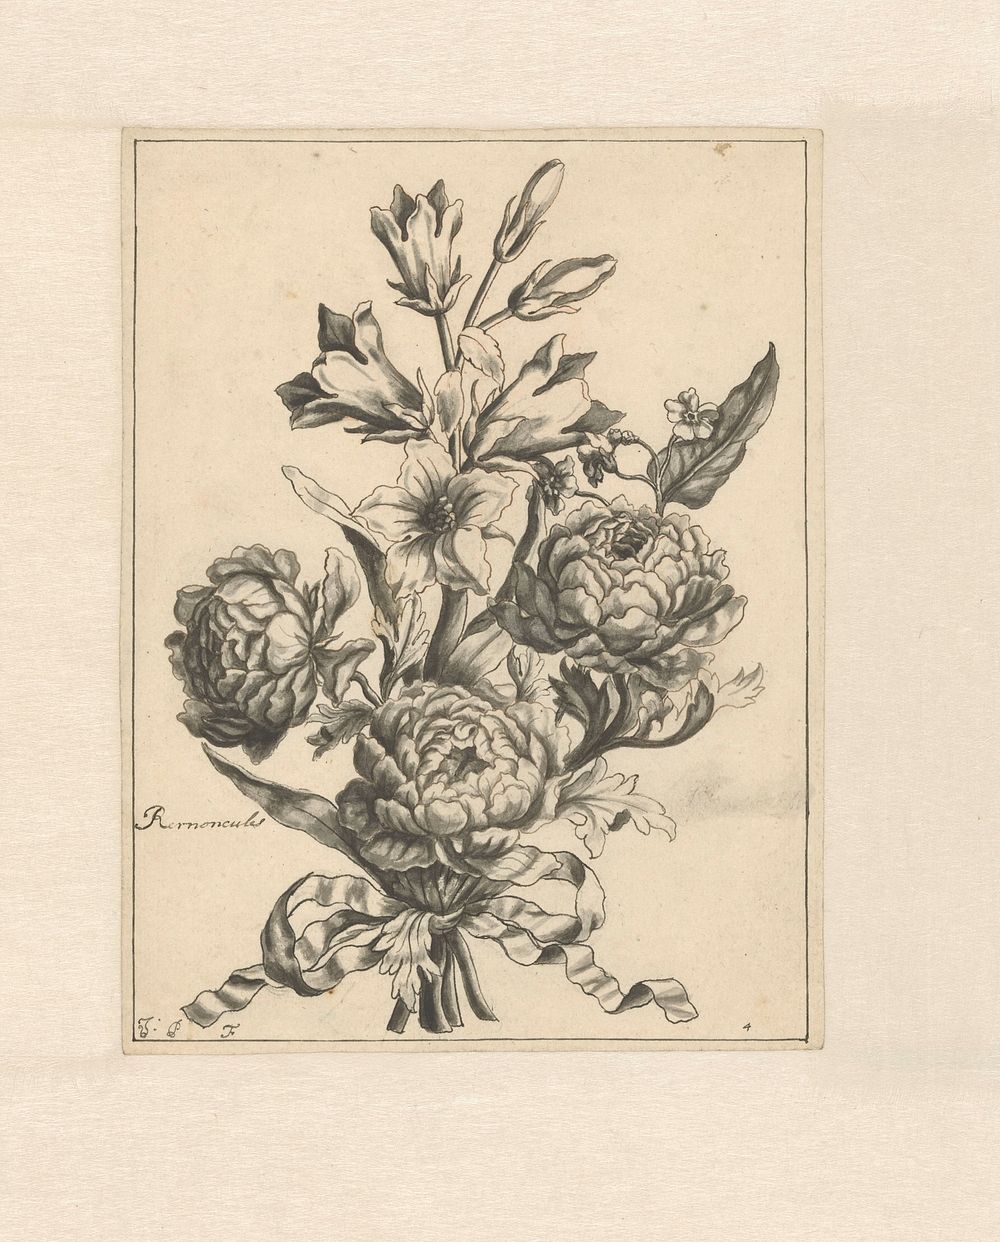 Boterbloemen met een lint samengebonden (1700 - 1800) by J Porteret